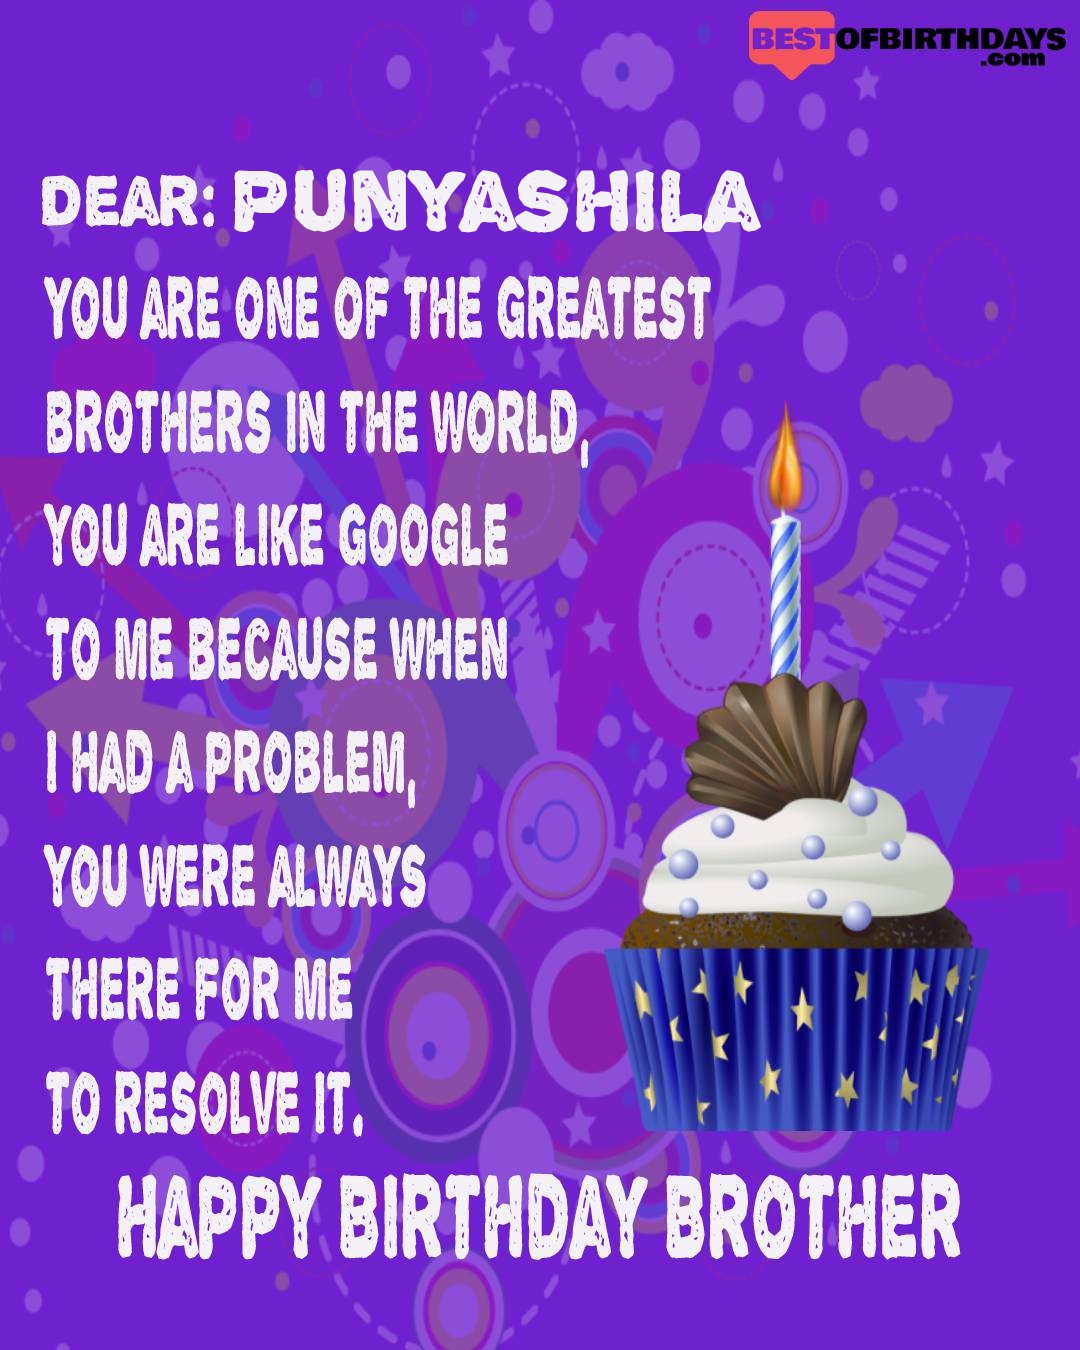 Happy birthday punyashila bhai brother bro